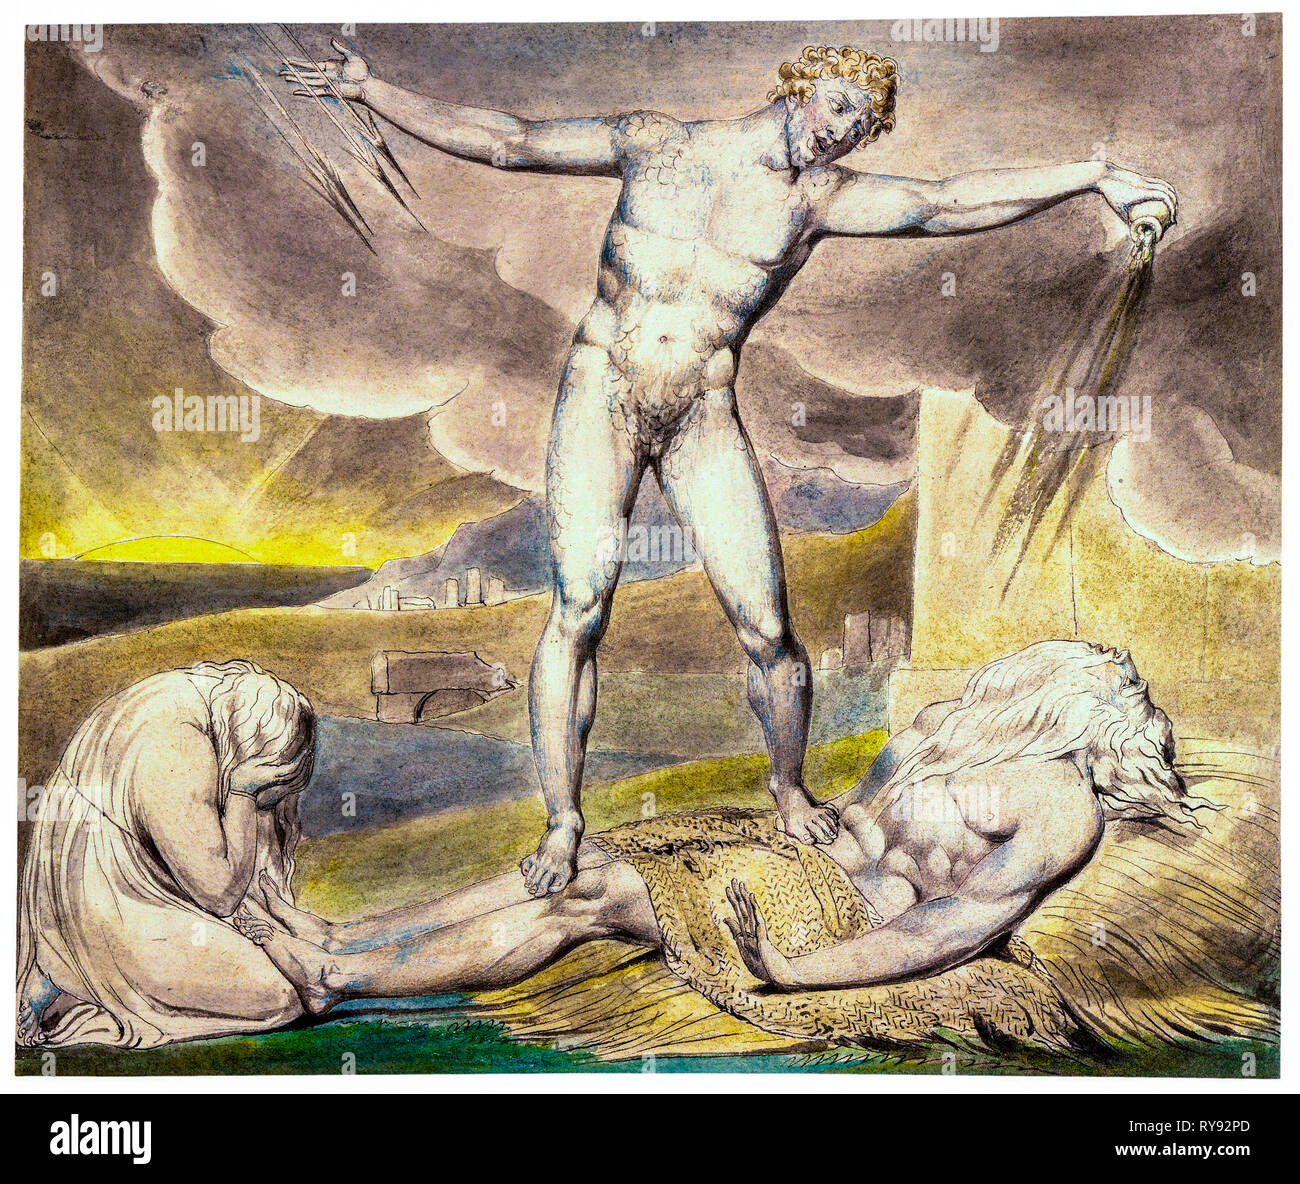 Satan smting Job avec des tourbières, peinture aquarelle sur stylo et encre par William Blake, 1805 Banque D'Images